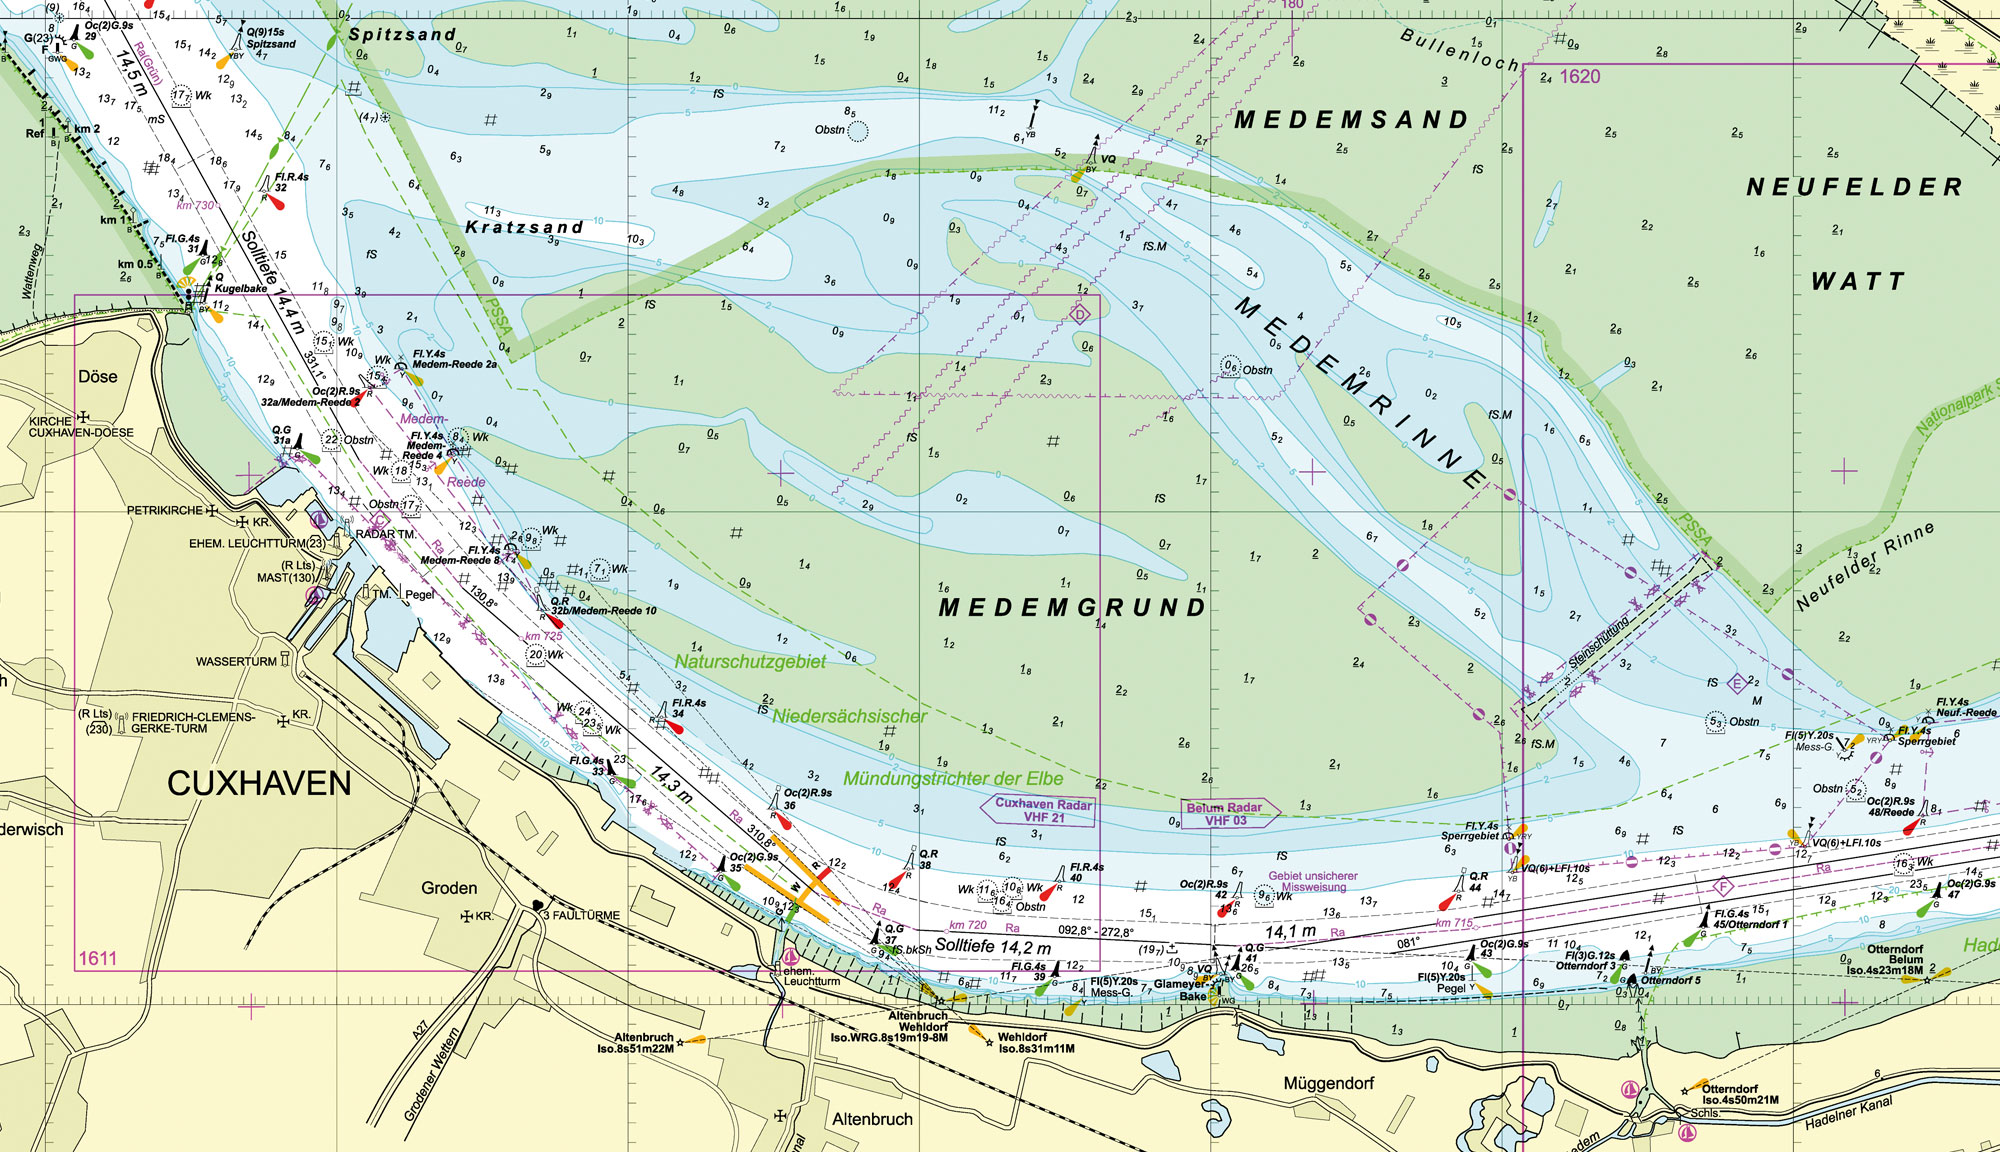 Ausschnitt der Seekarte BSH1610 für die Küstenschifffahrt mit allen Details auch im Flachwasserbereich und Nautischen Informationen für die Nebenfahrwasser.